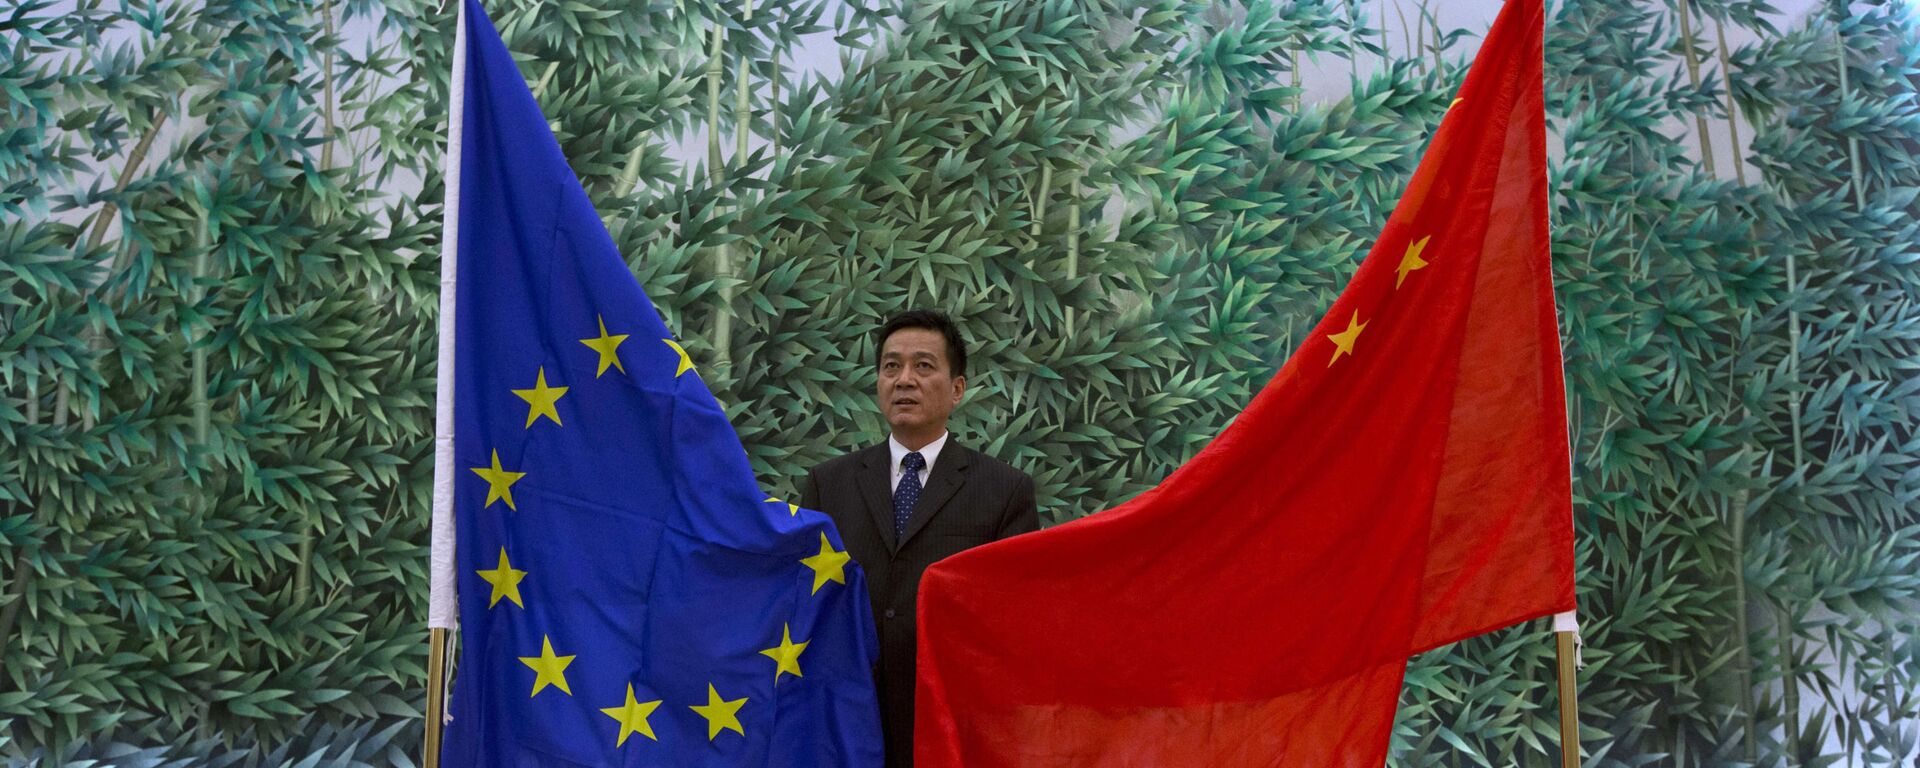 Cờ của EU và Trung Quốc ở Bắc Kinh - Sputnik Việt Nam, 1920, 20.05.2021